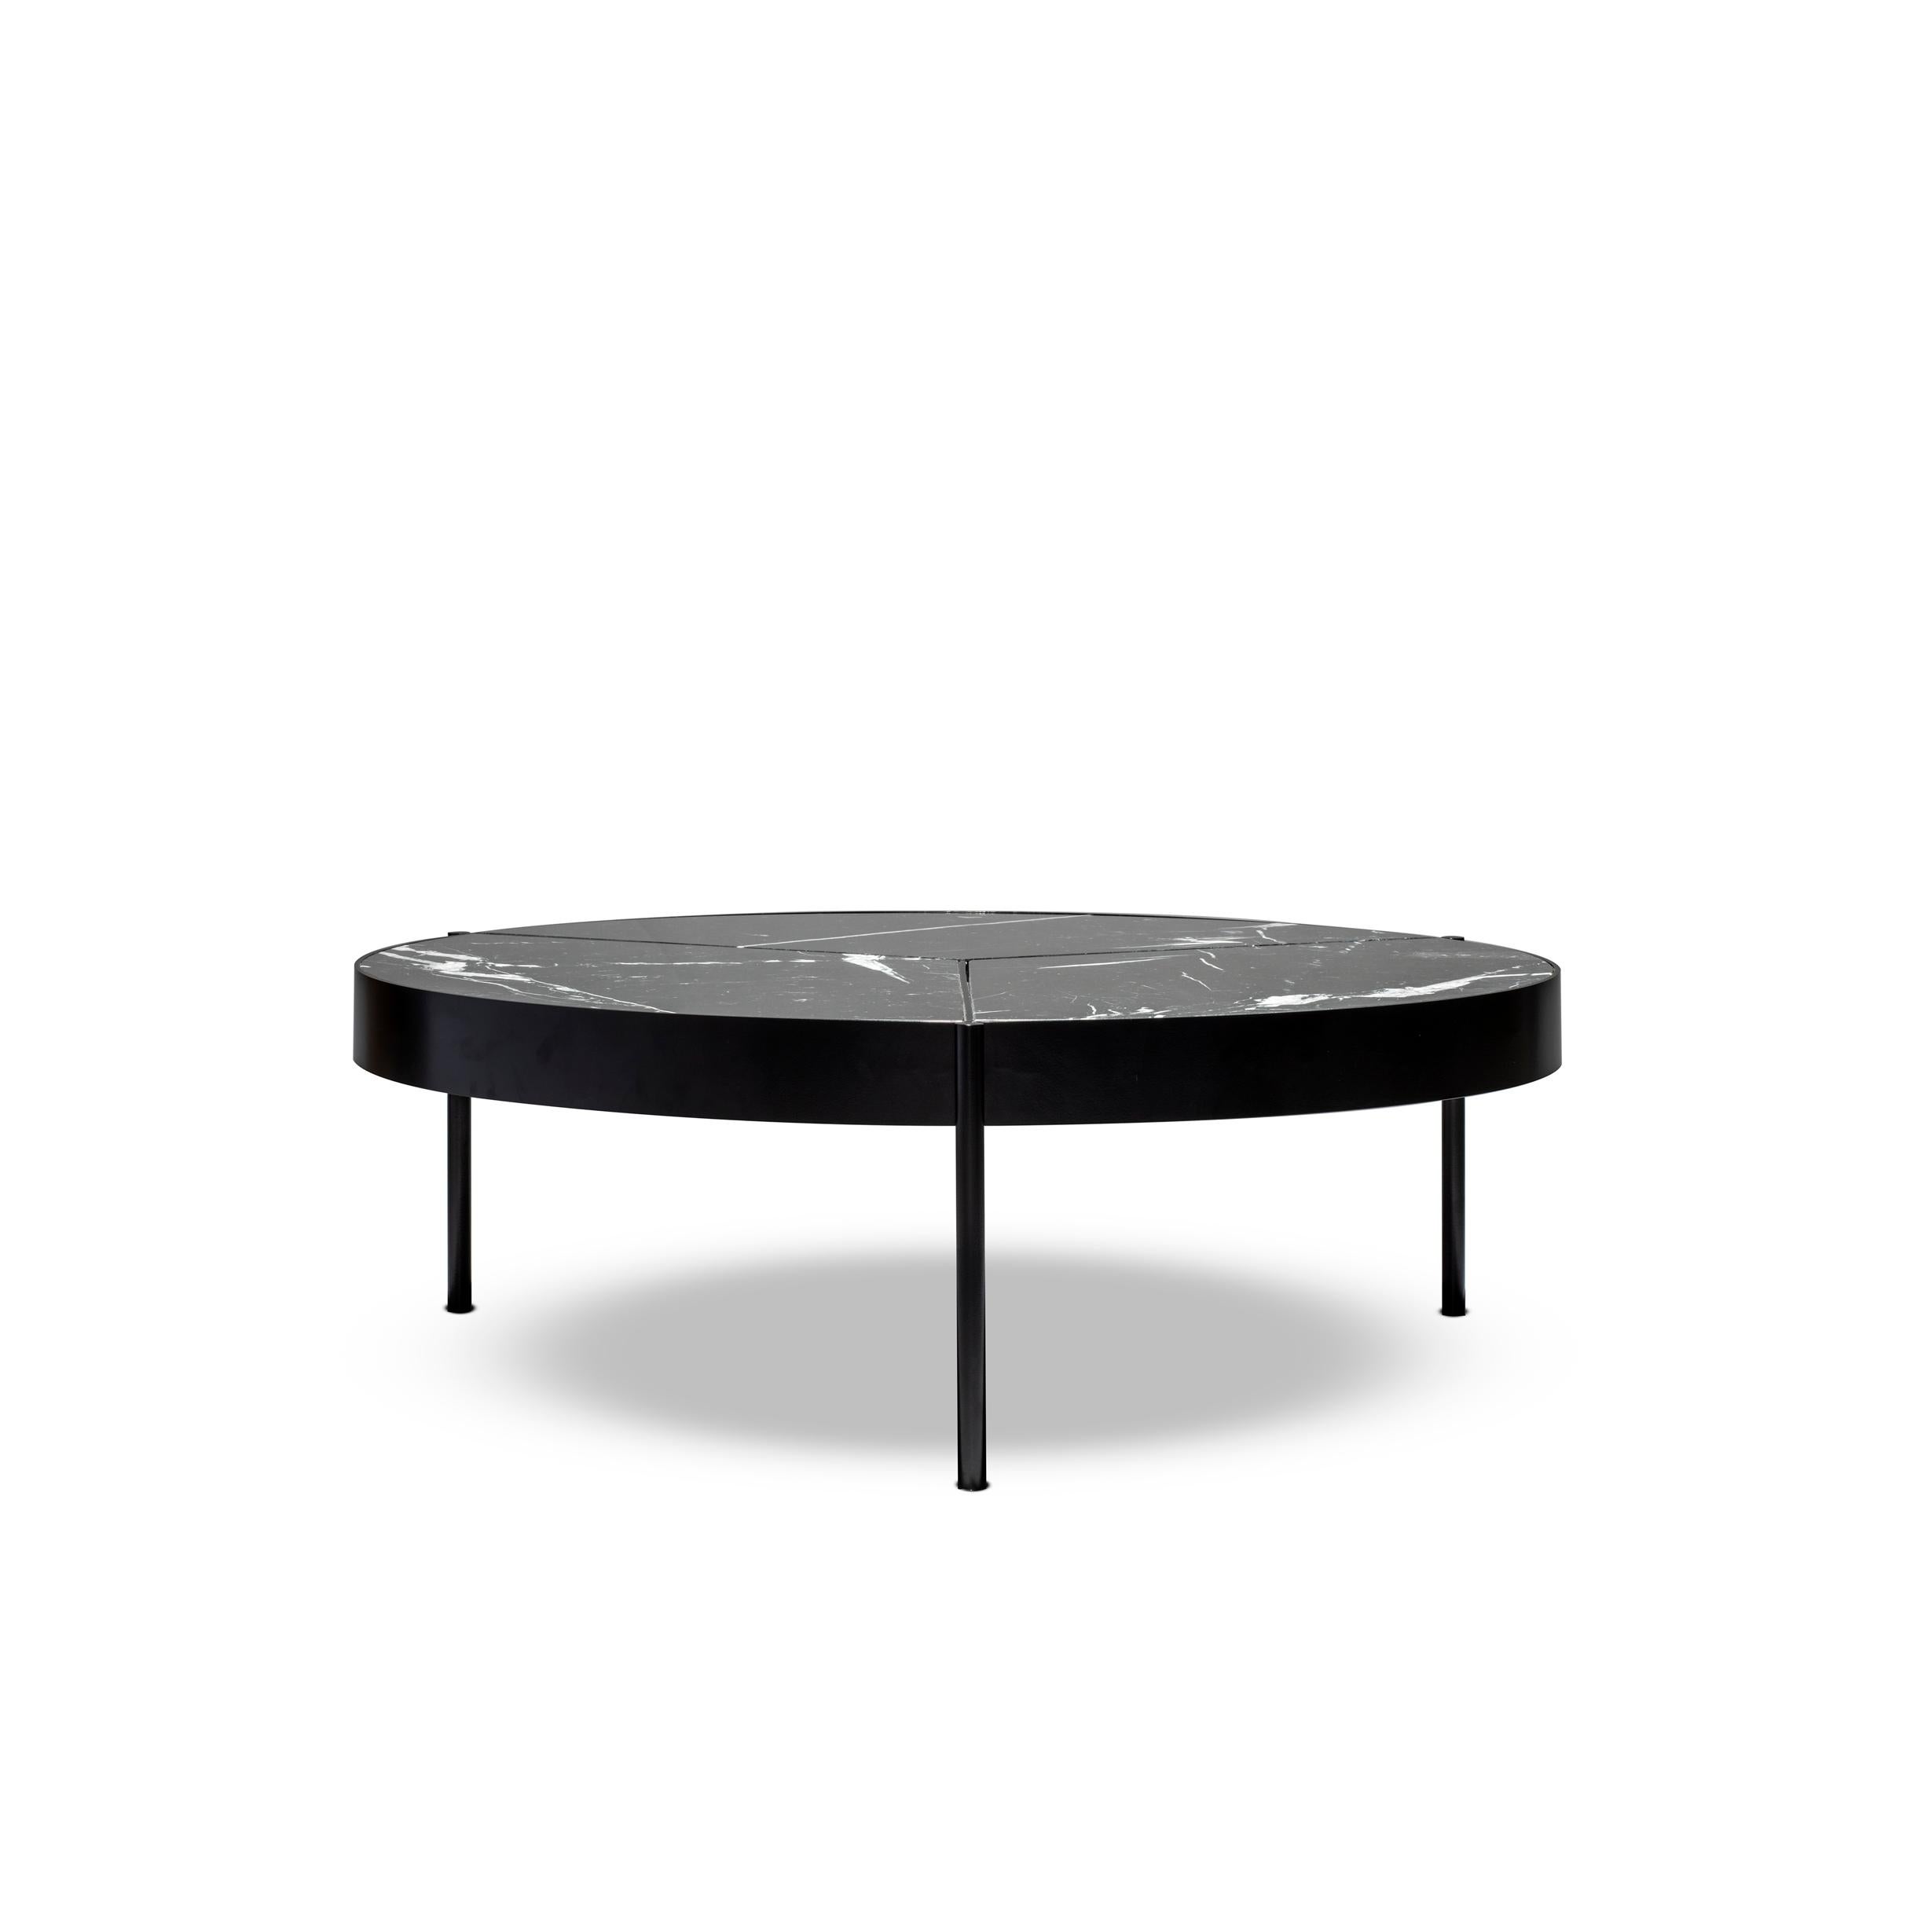 Table basse Ray 100, en bronze laqué noir et plateau en Nero Marquina par Duistt

La table basse Ray est une combinaison d'élégance et de polyvalence. Ses trois rayons délicats confinent la division au plateau de la table, permettant la